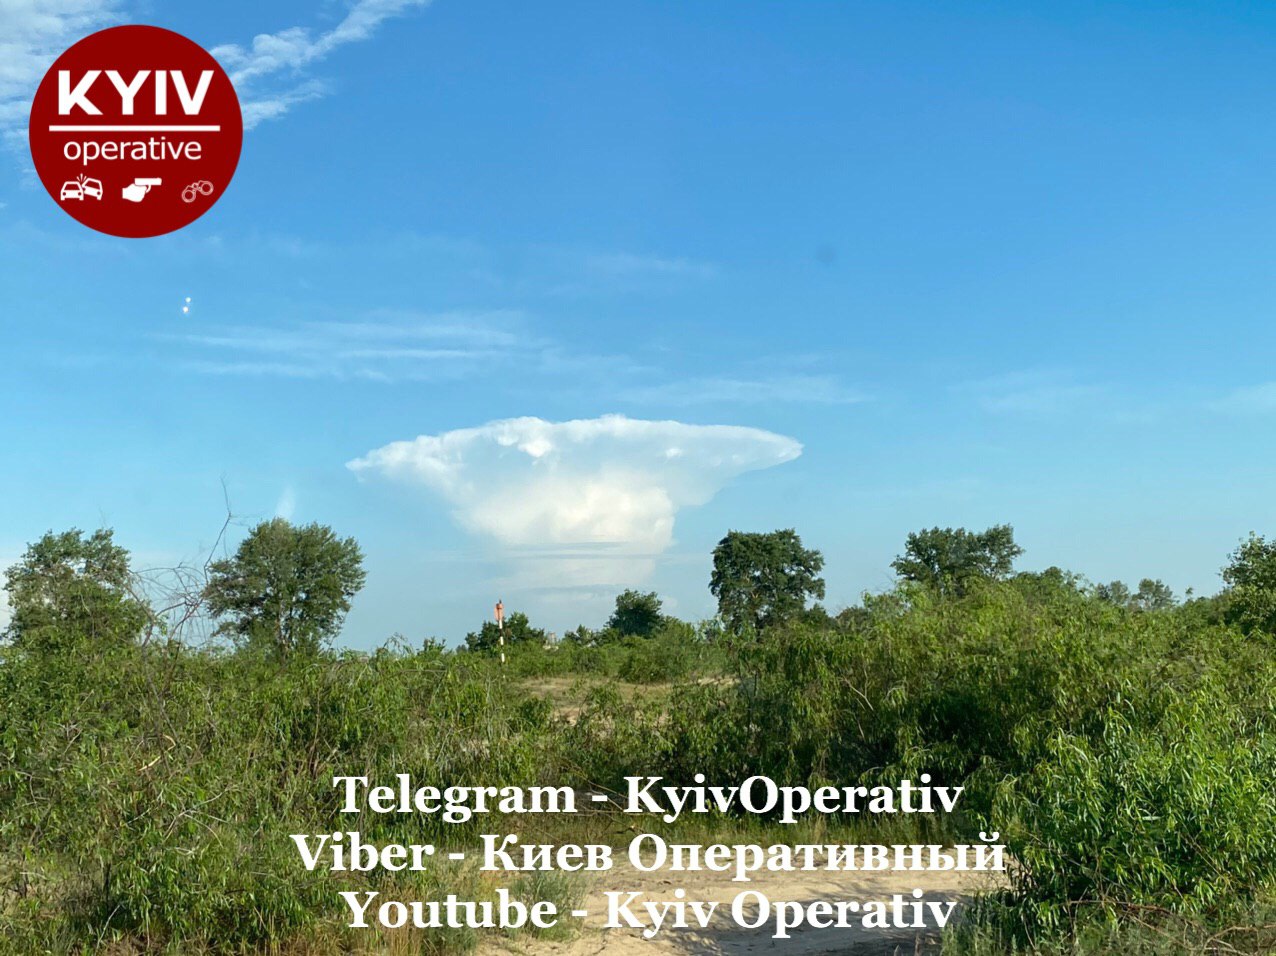 В Сети обсуждают удивительное облако в форме гриба над Киевом. Фото: Оперативный Киев